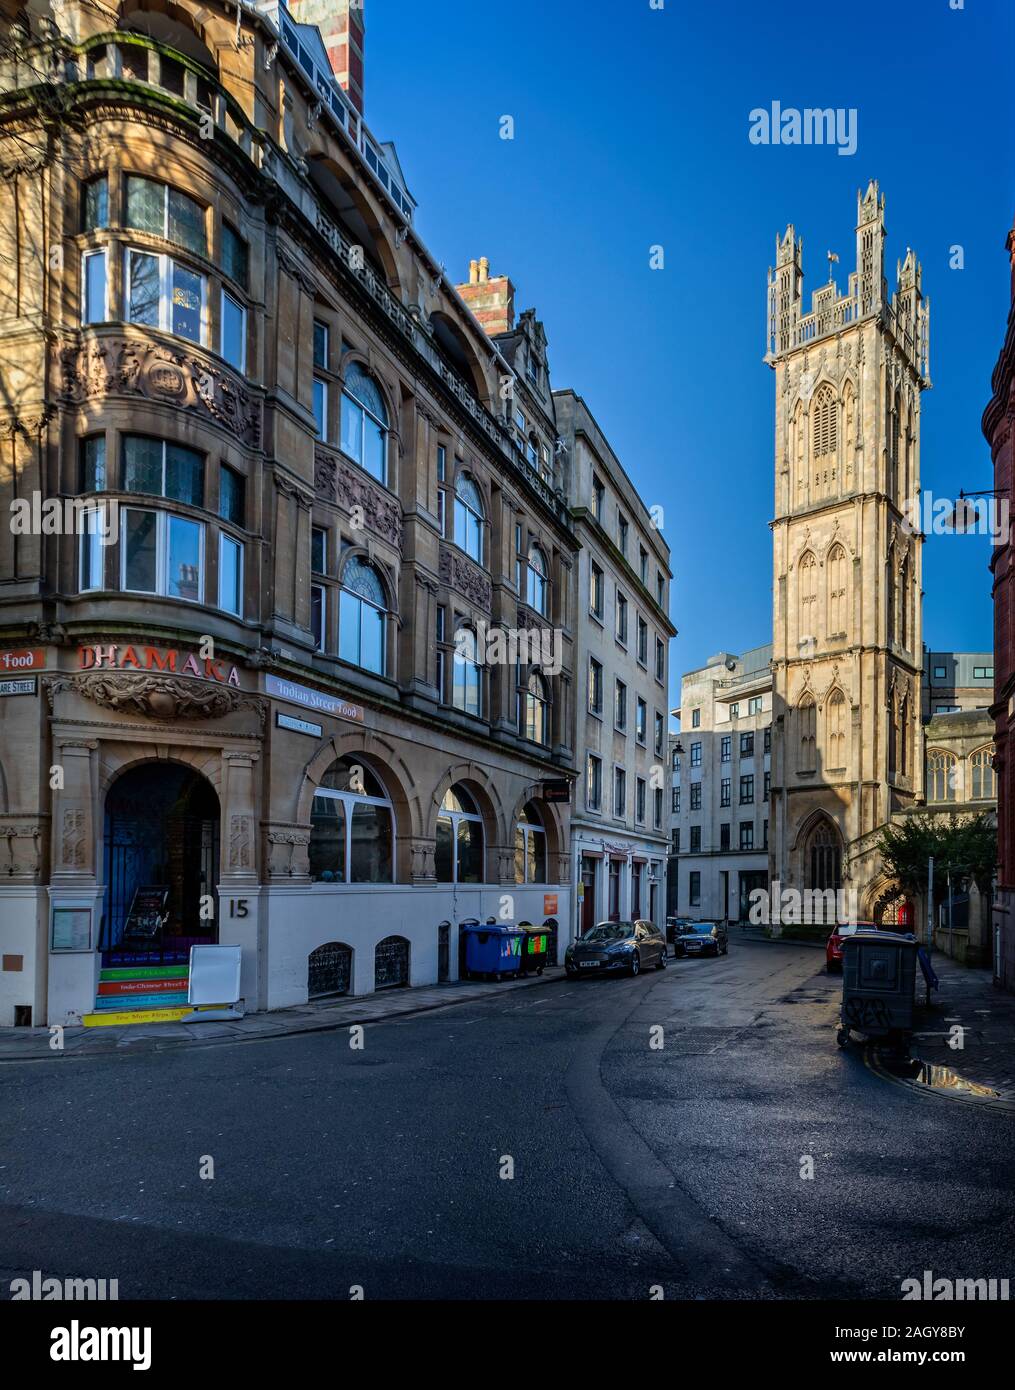 Blick auf die St. Stephen's Church und die umliegenden Gebäude in St. Stephen's Avenue, Central Bristol, Avon, Großbritannien am 21. Dezember 2019 Stockfoto